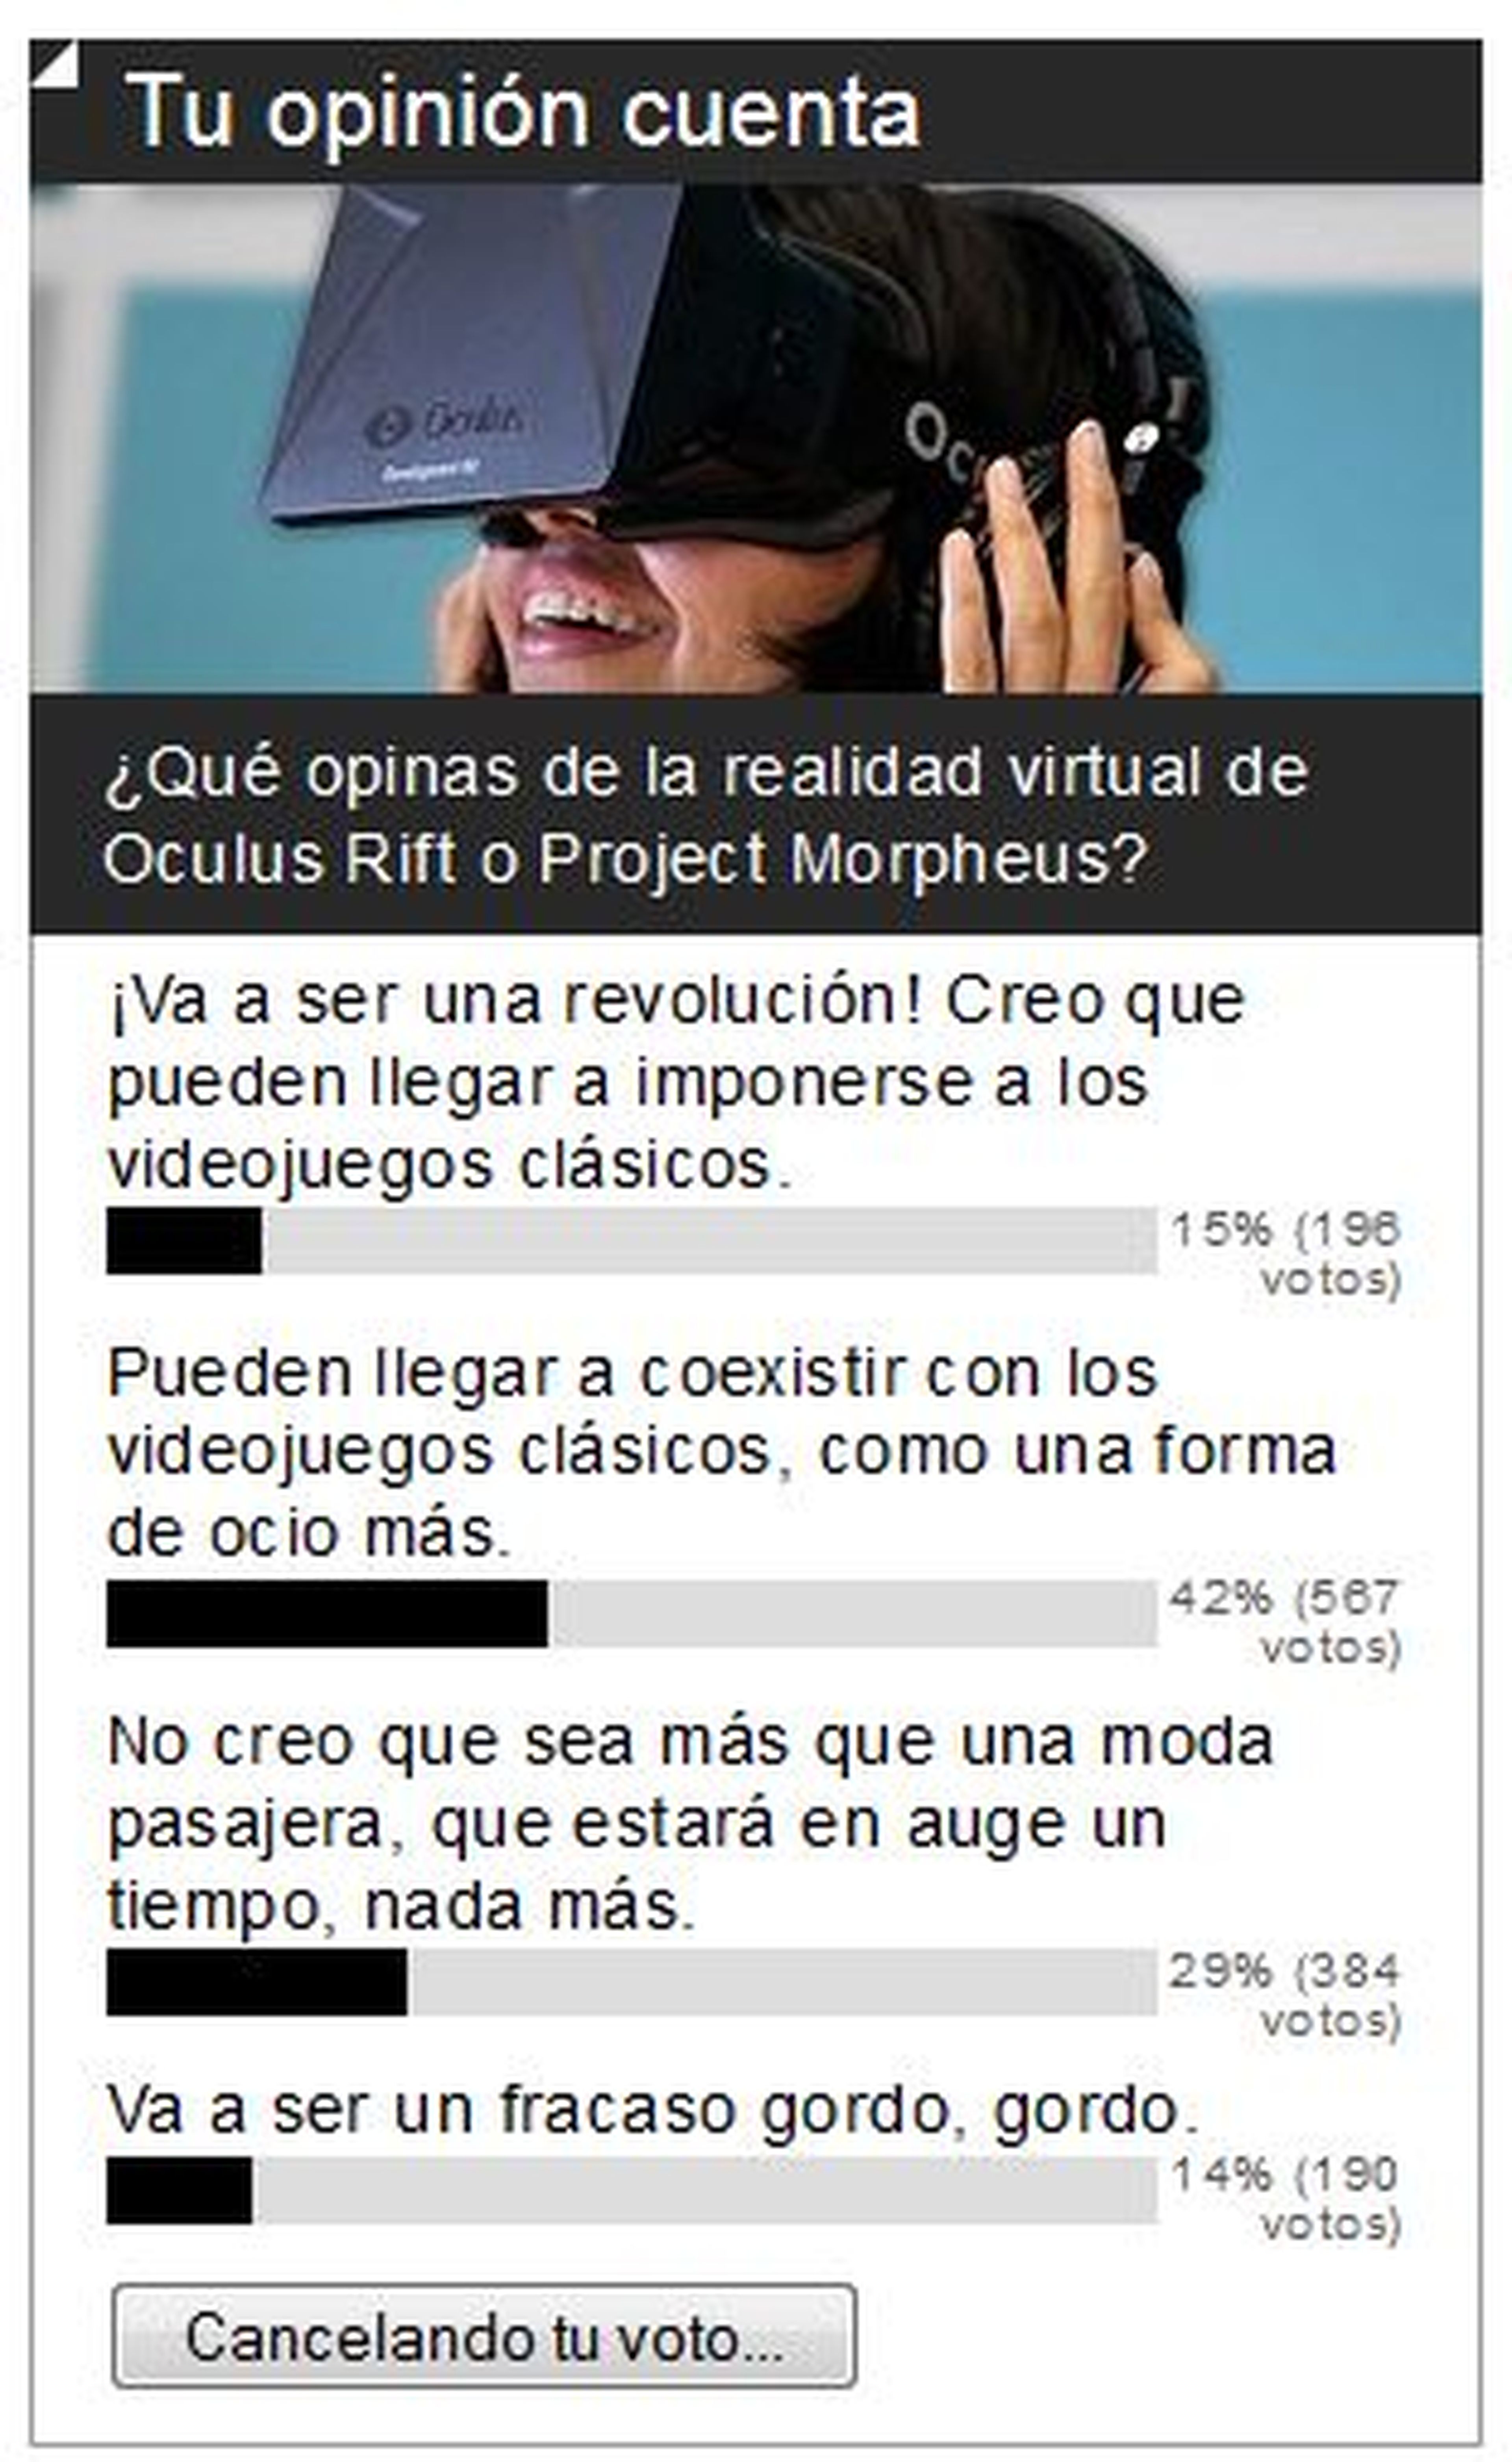 Encuesta: La realidad virtual puede coexistir con los videojuegos "clásicos"